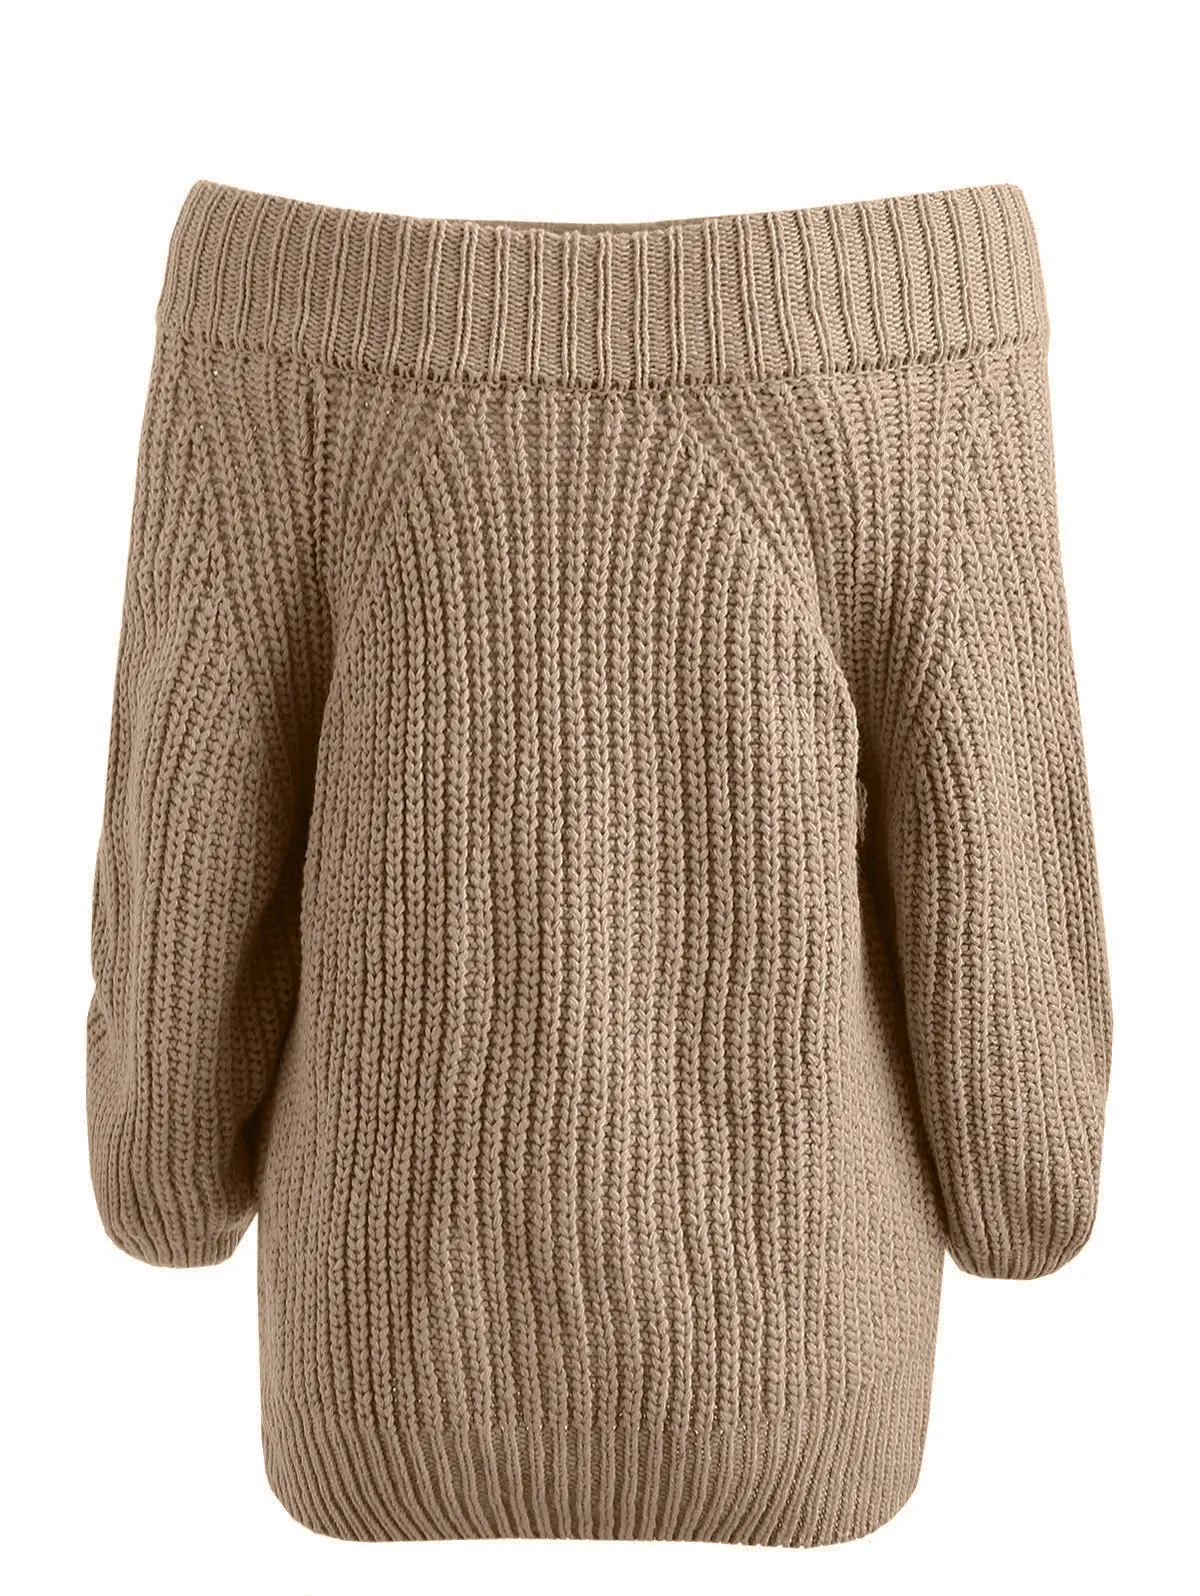 Wipalo Женский пуловер с открытыми плечами, джемпер с крупной вязкой и длинными рукавами